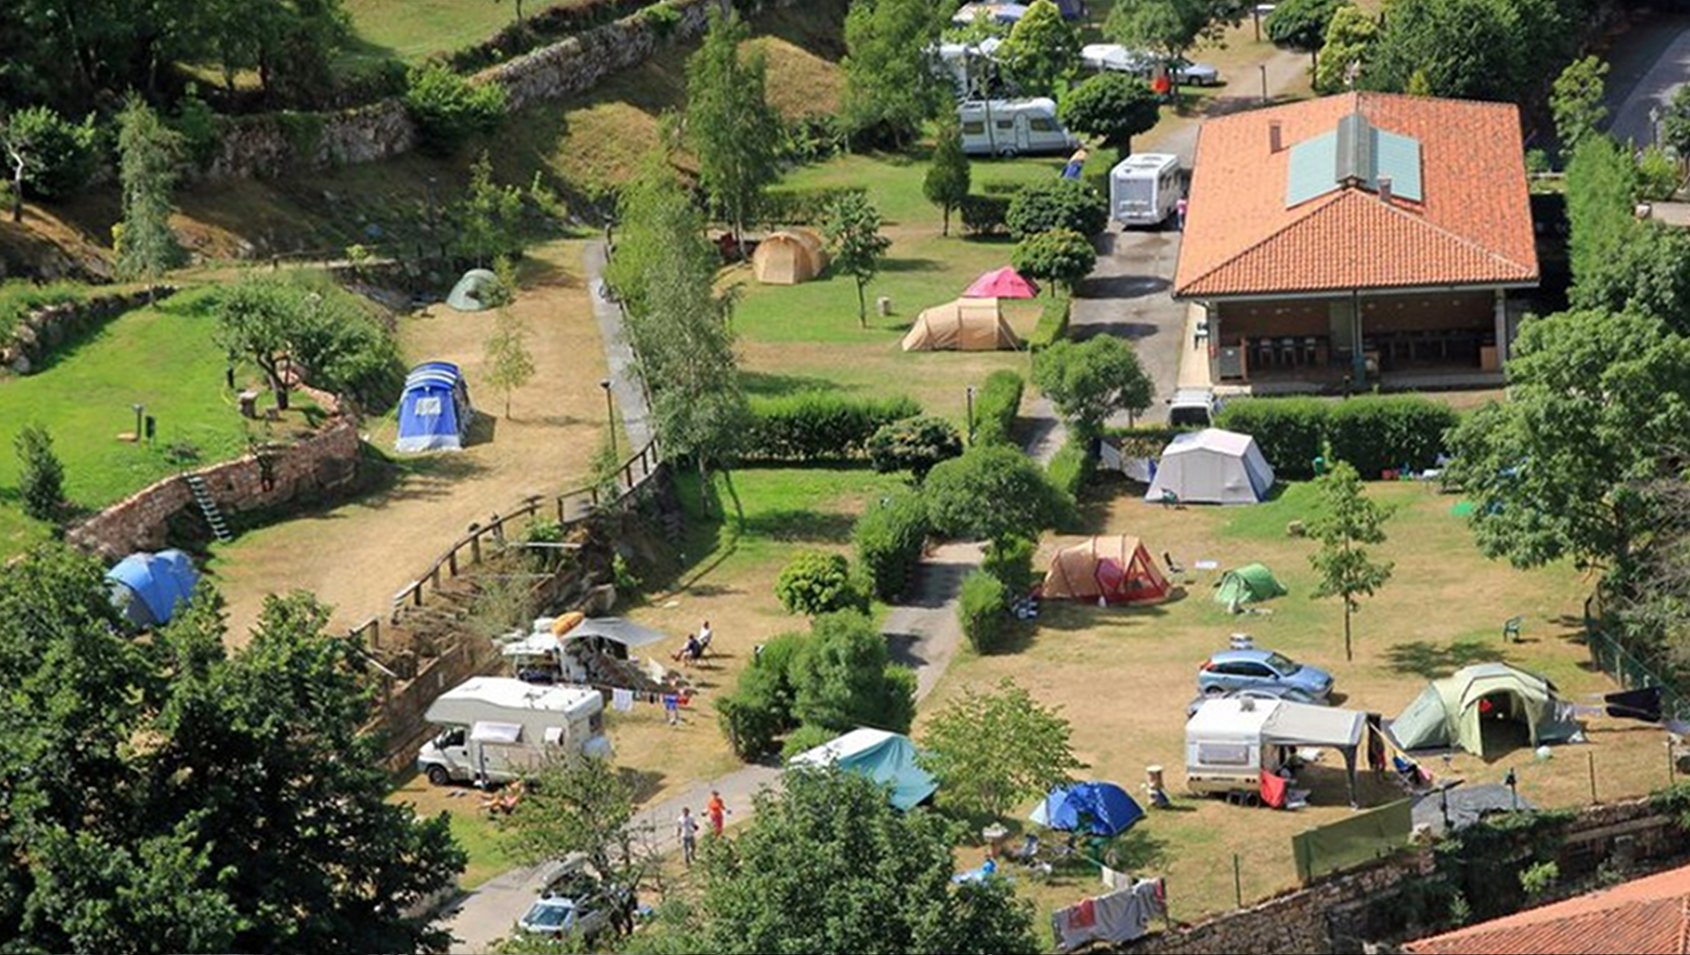 Vista general del Camping La Pomarada de Somiedo